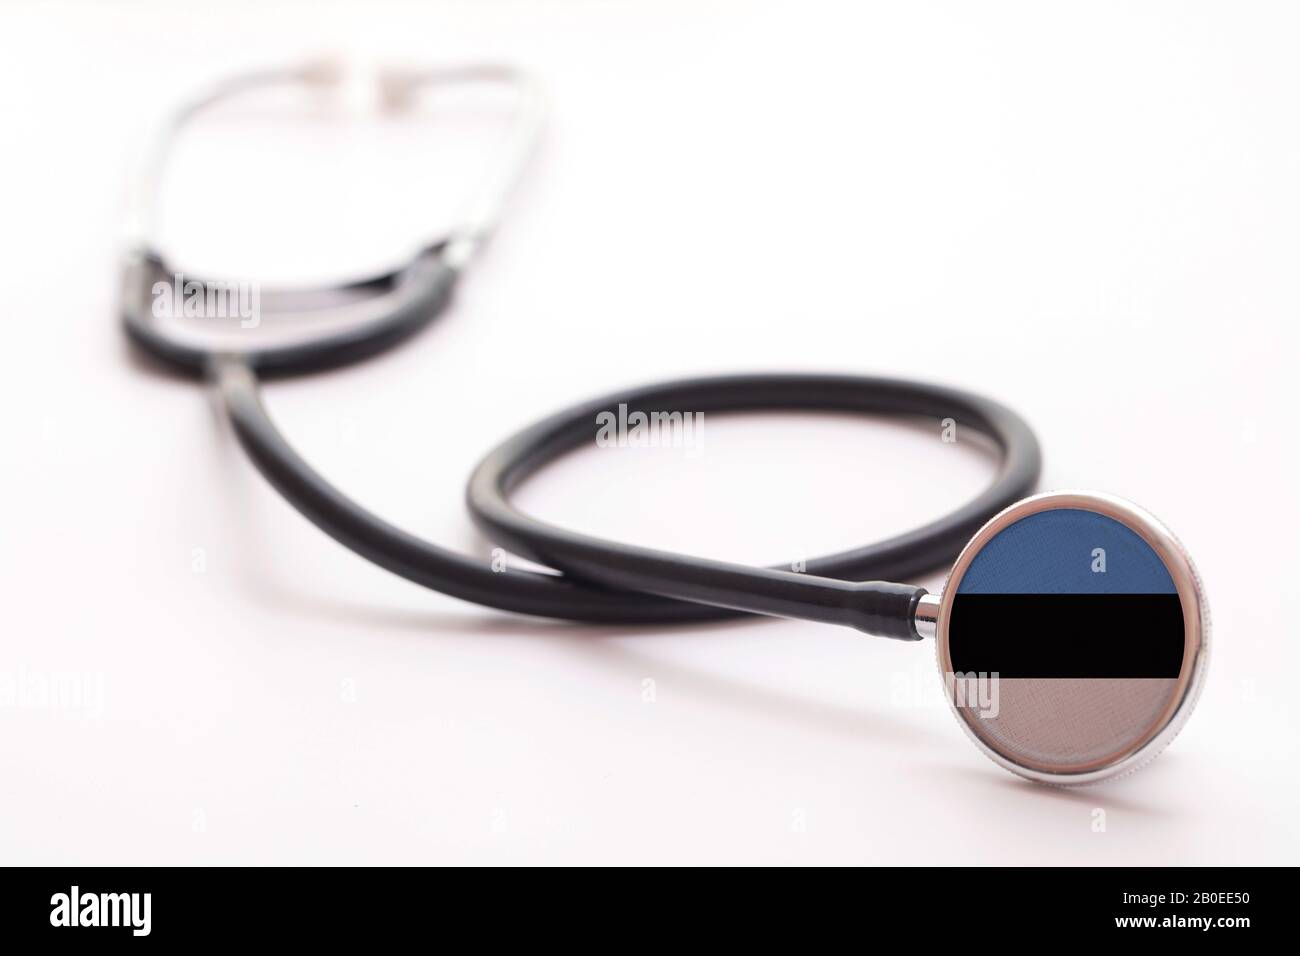 Concetto di assistenza sanitaria in Estonia. Stetoscopio medico con bandiera del paese Foto Stock